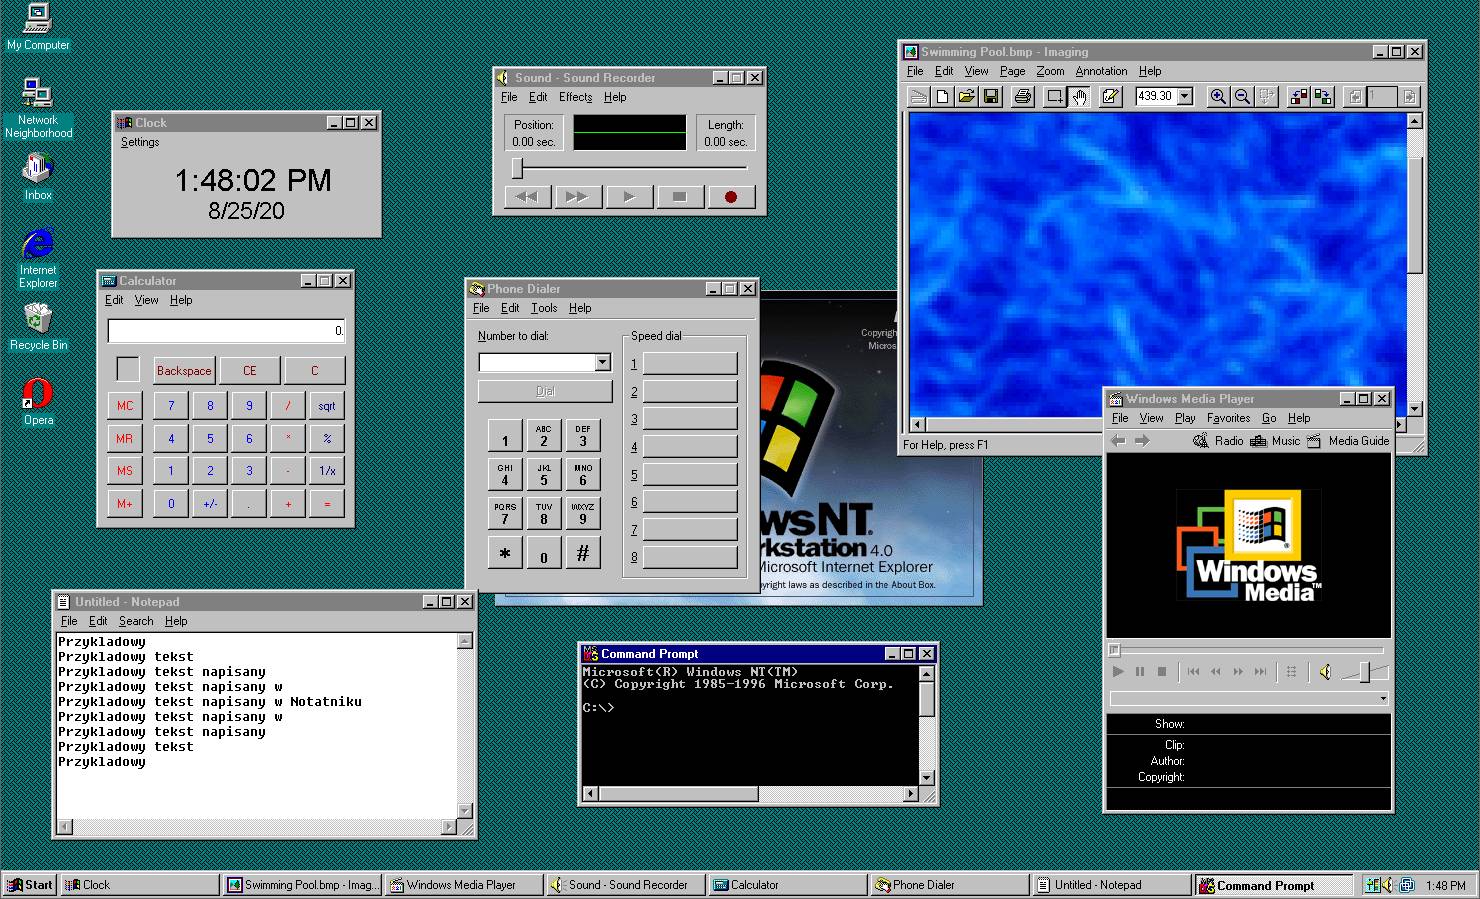 Aplikacje systemowe dołączone do systemu, znane z Windows 95.